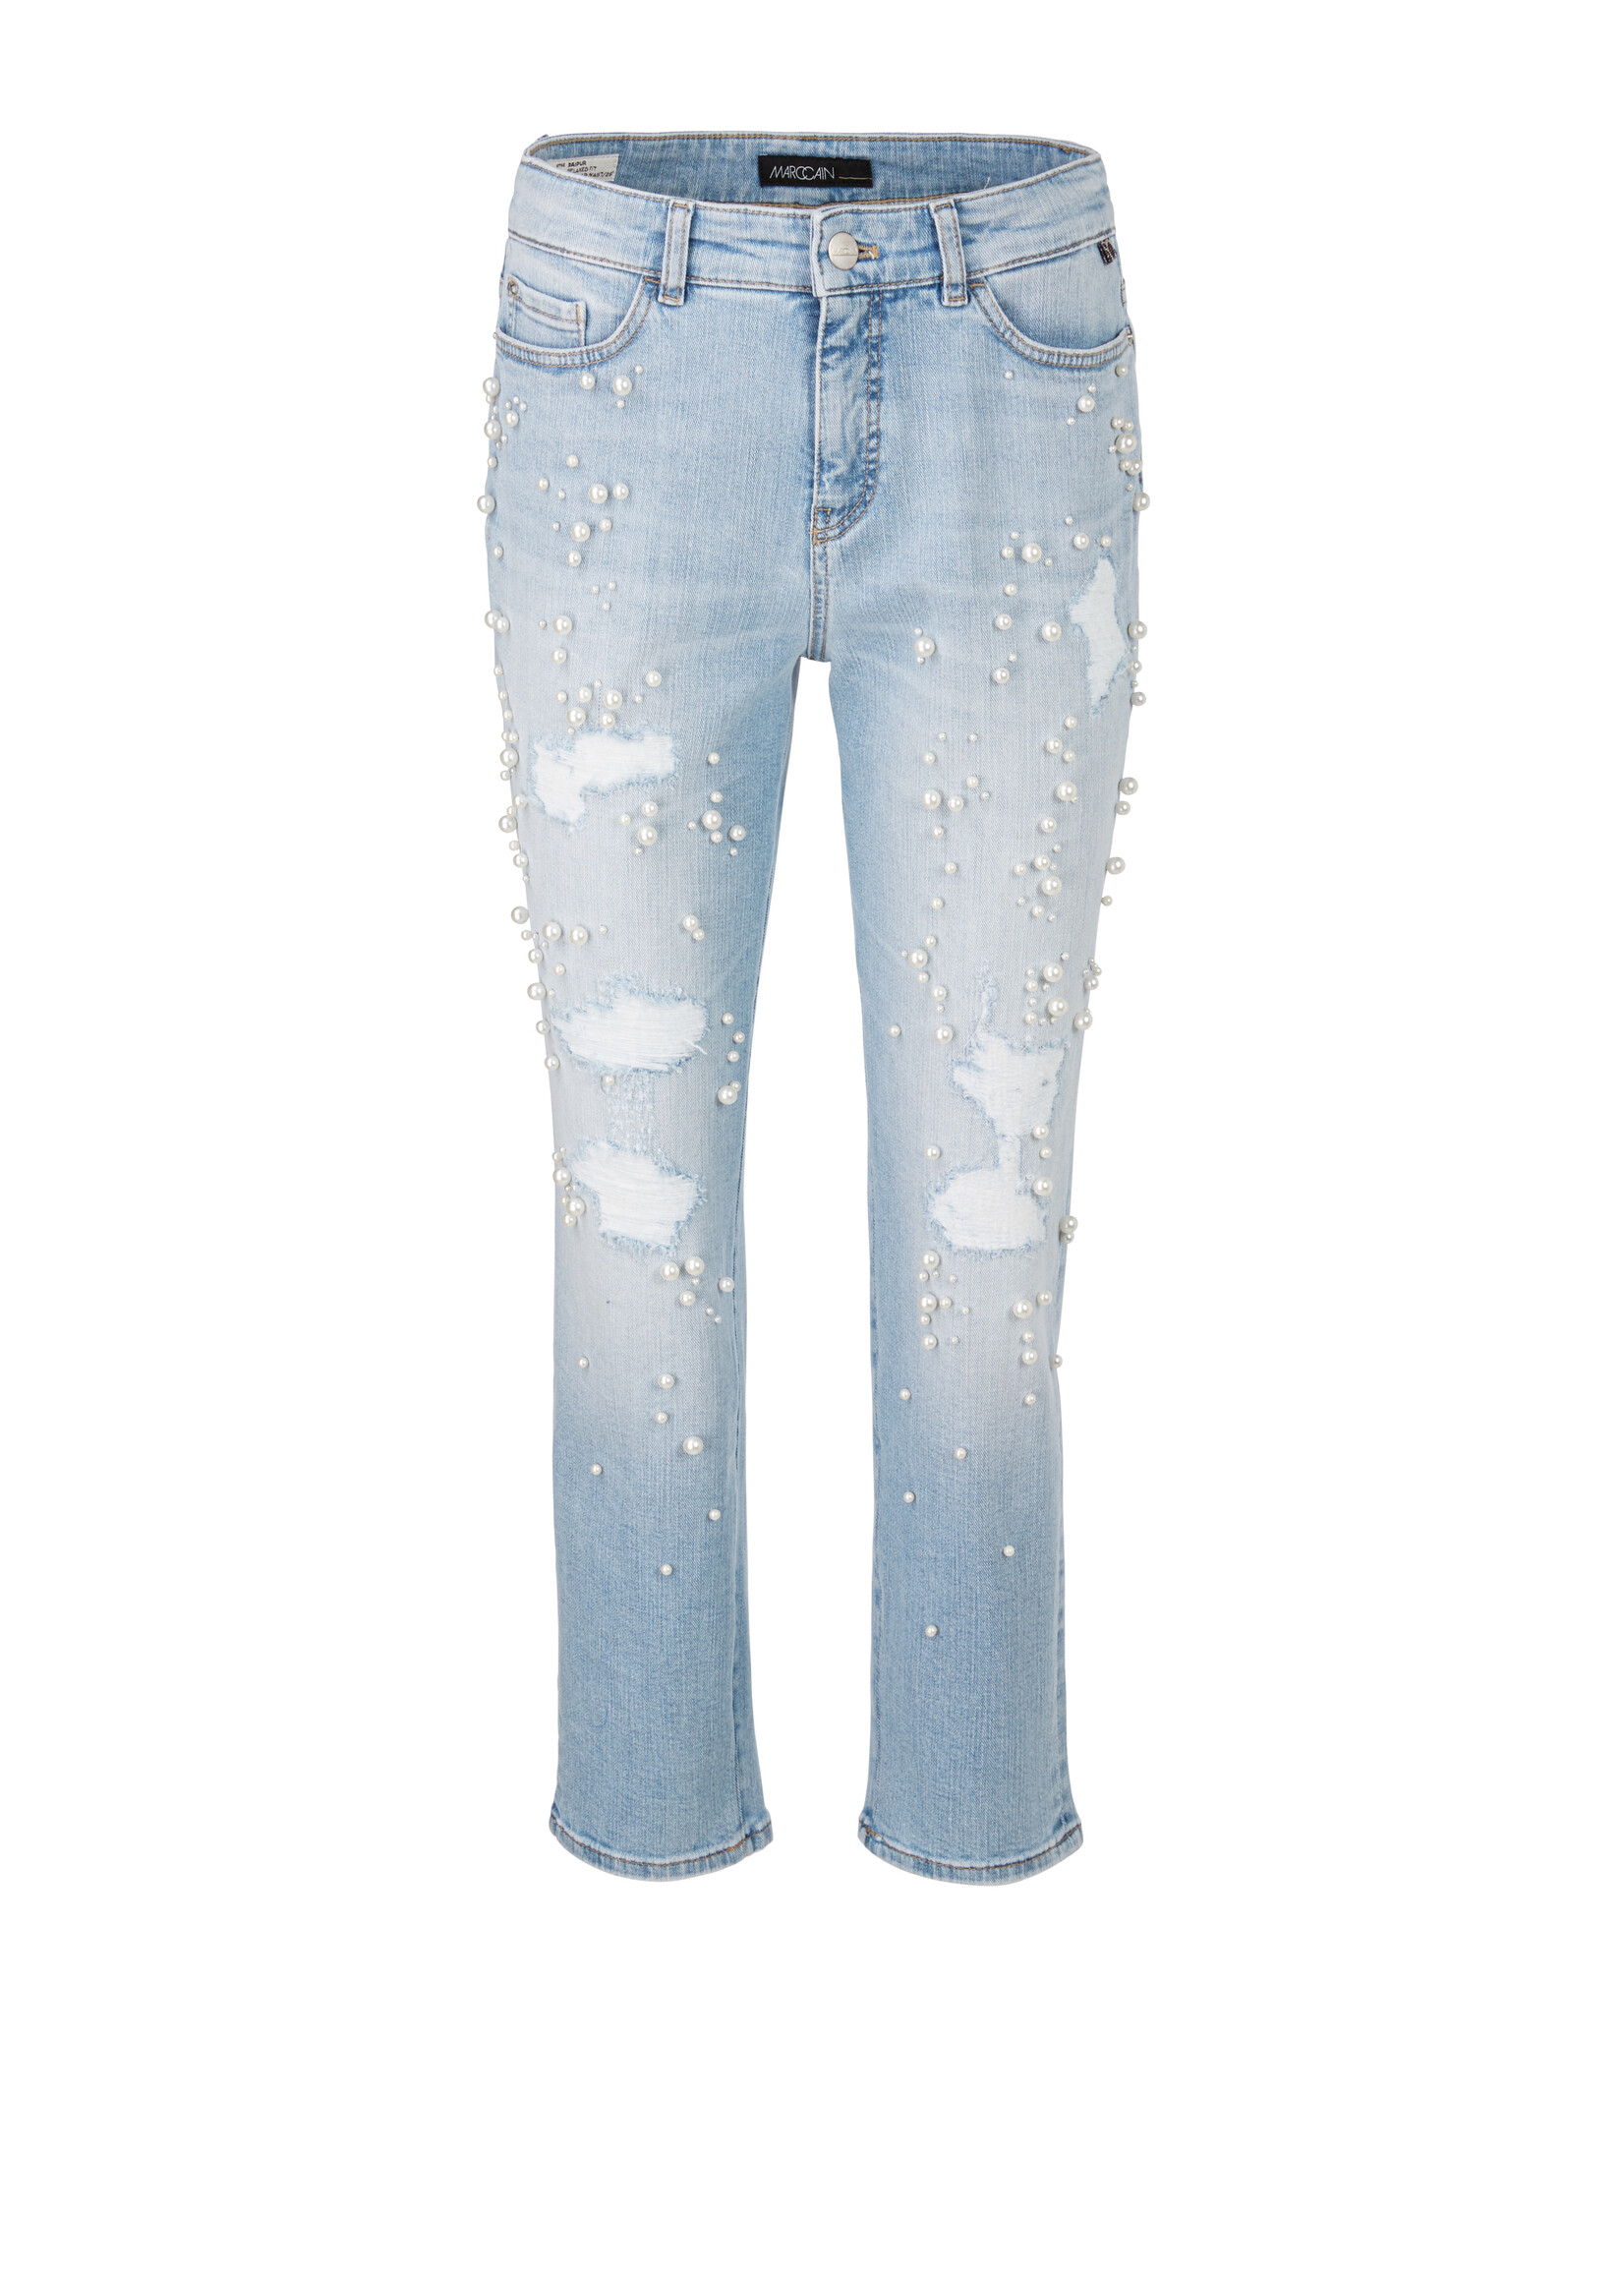 Marccain Pants Jeans WP 82.22 D13 350